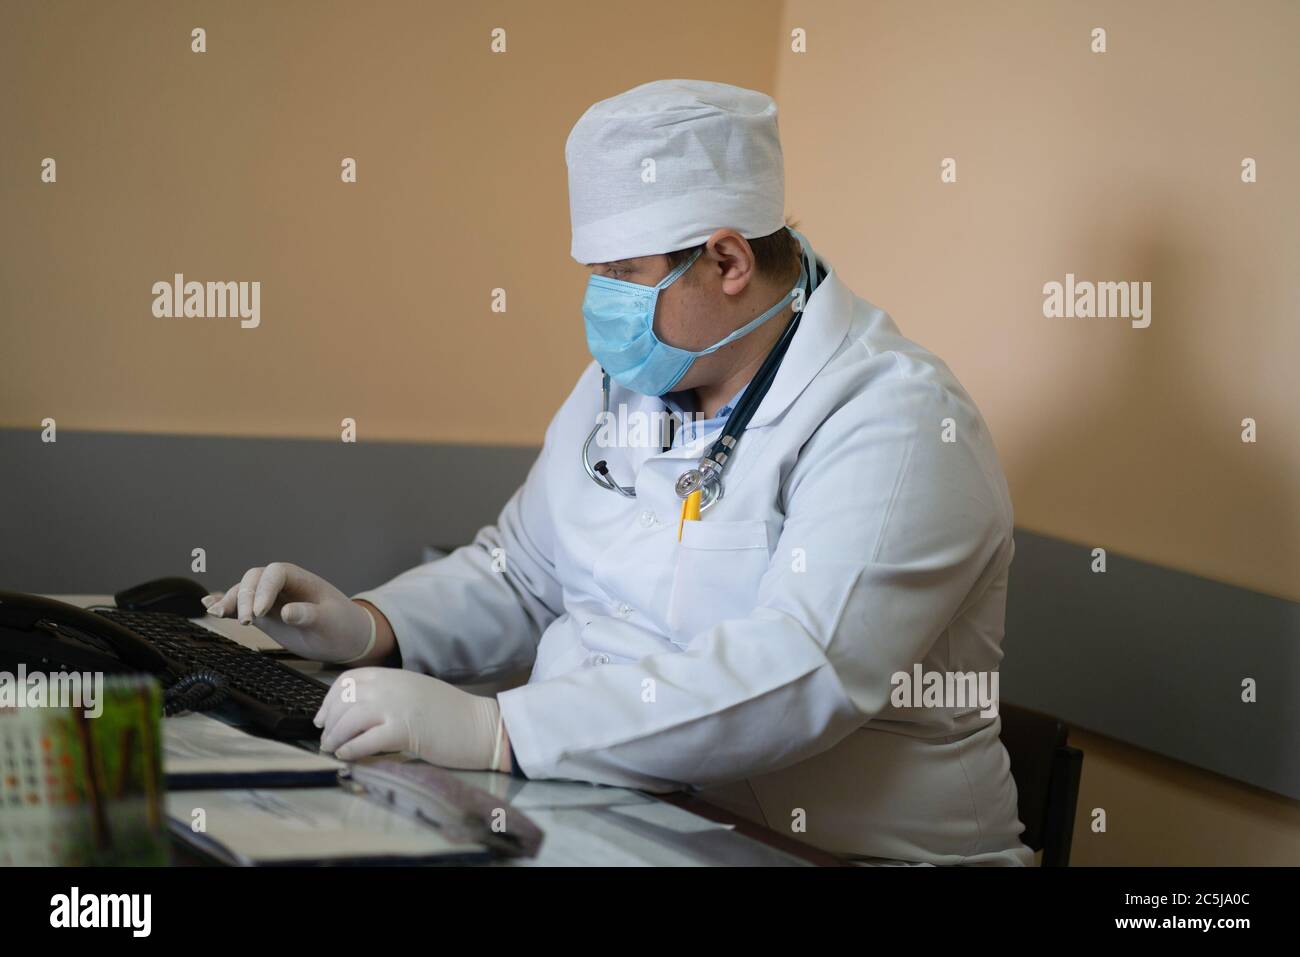 GP Arzt arbeitet mit Computer in der medizinischen Praxis. Heilpraktiker, der am Schreibtisch sitzt und auf der Tastatur tippt. Stadtkrankenhaus. Mai 2020 Stockfoto